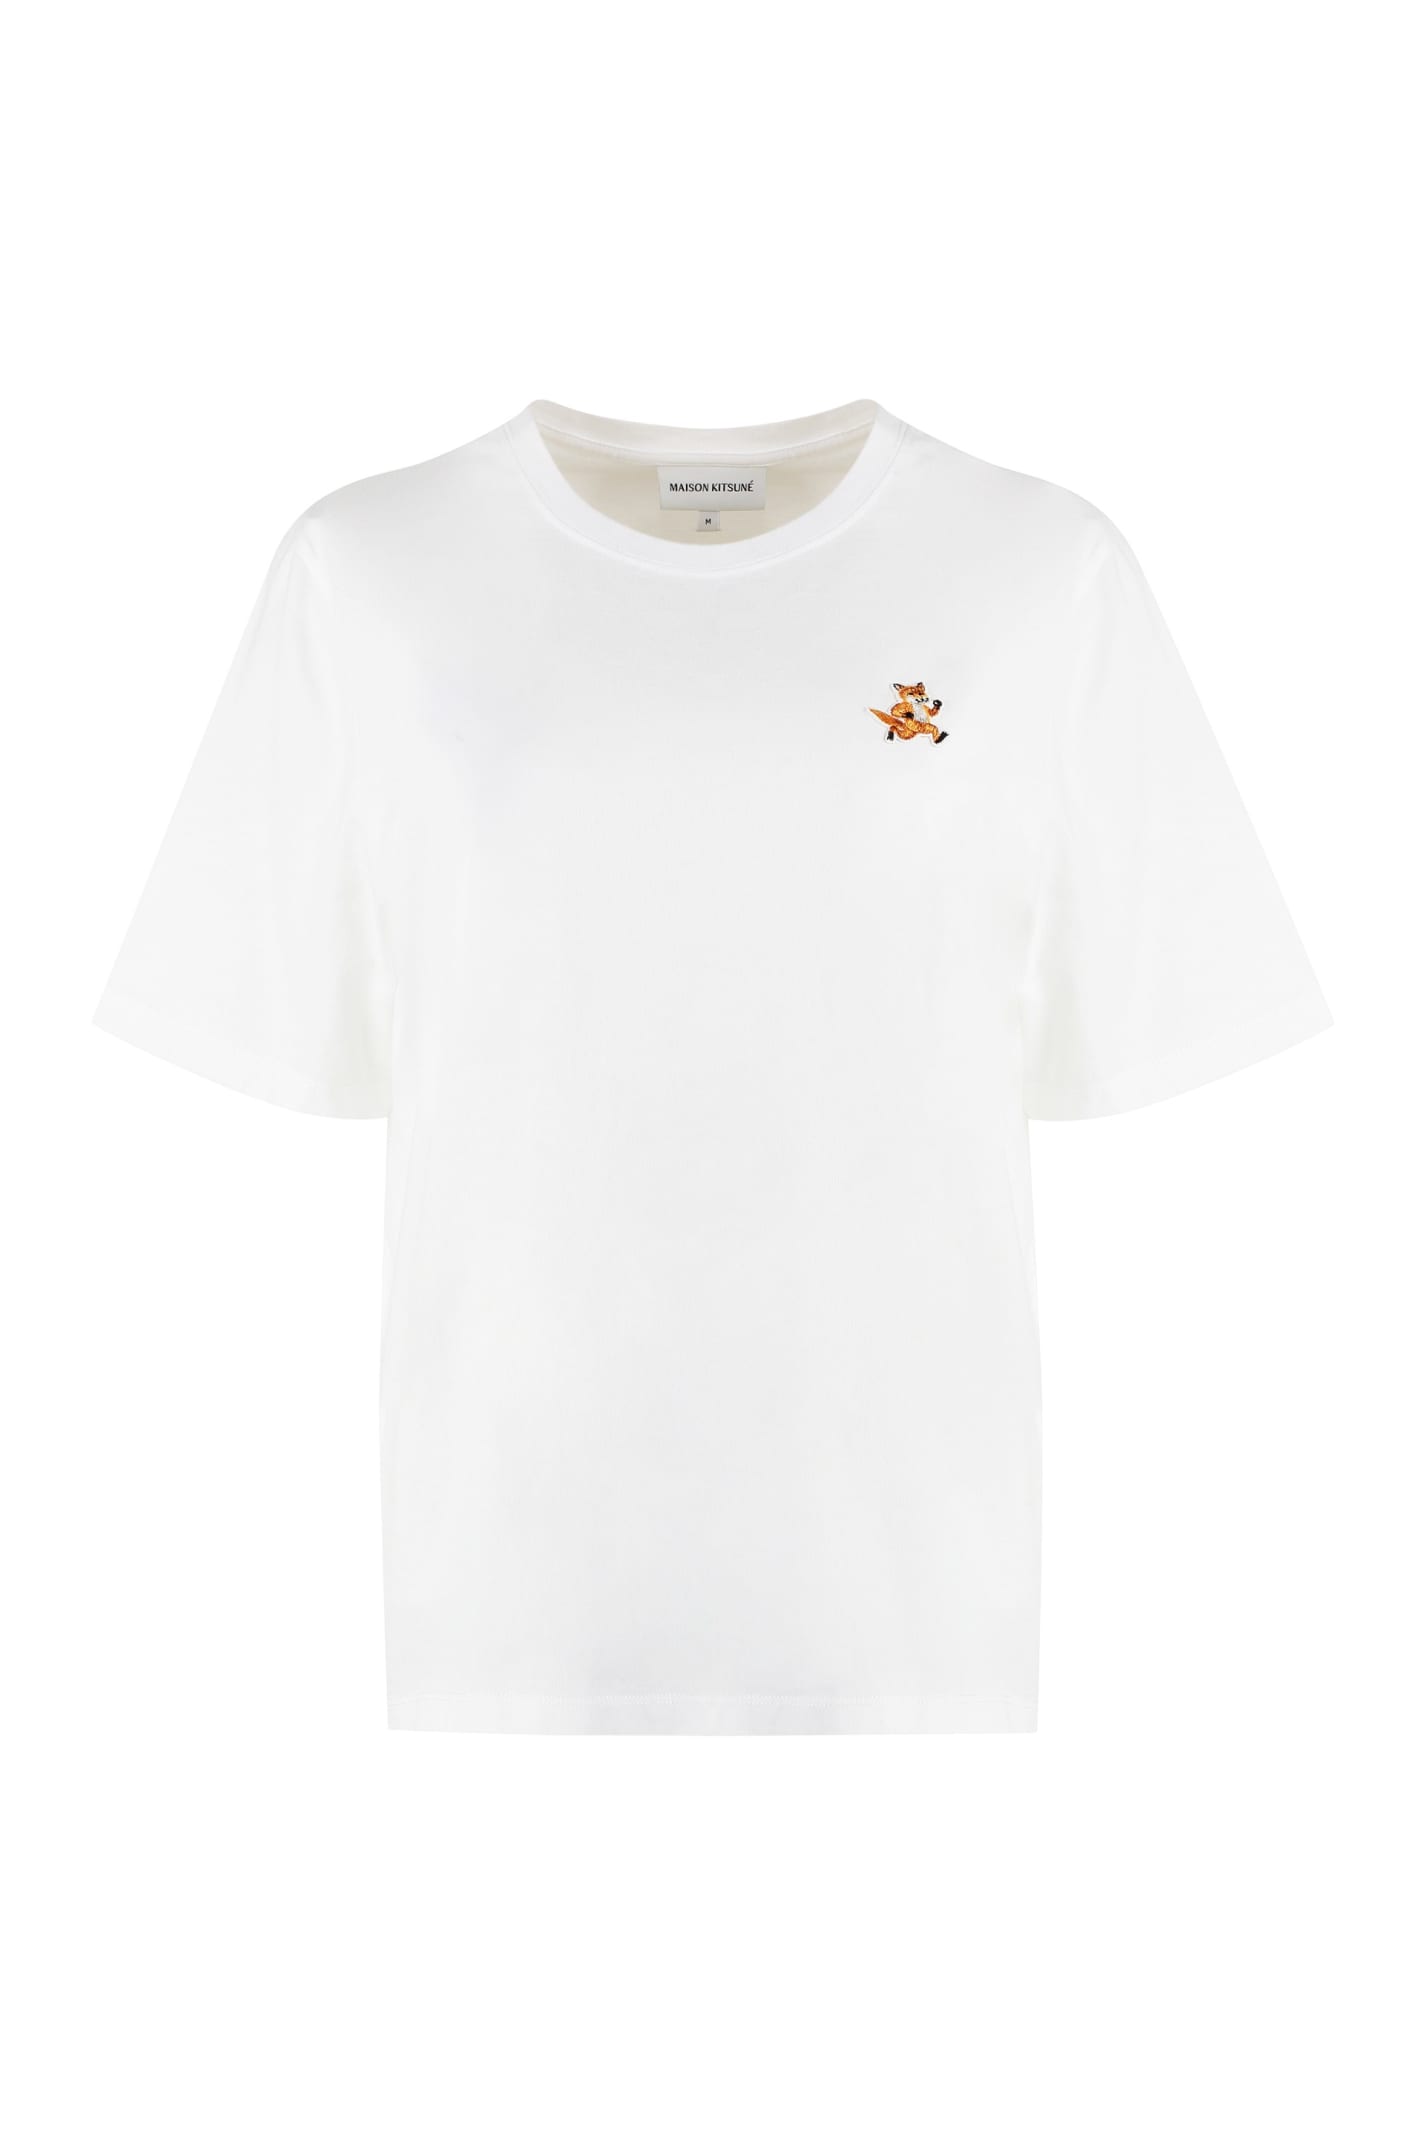 Maison Kitsuné Cotton Crew-neck T-shirt